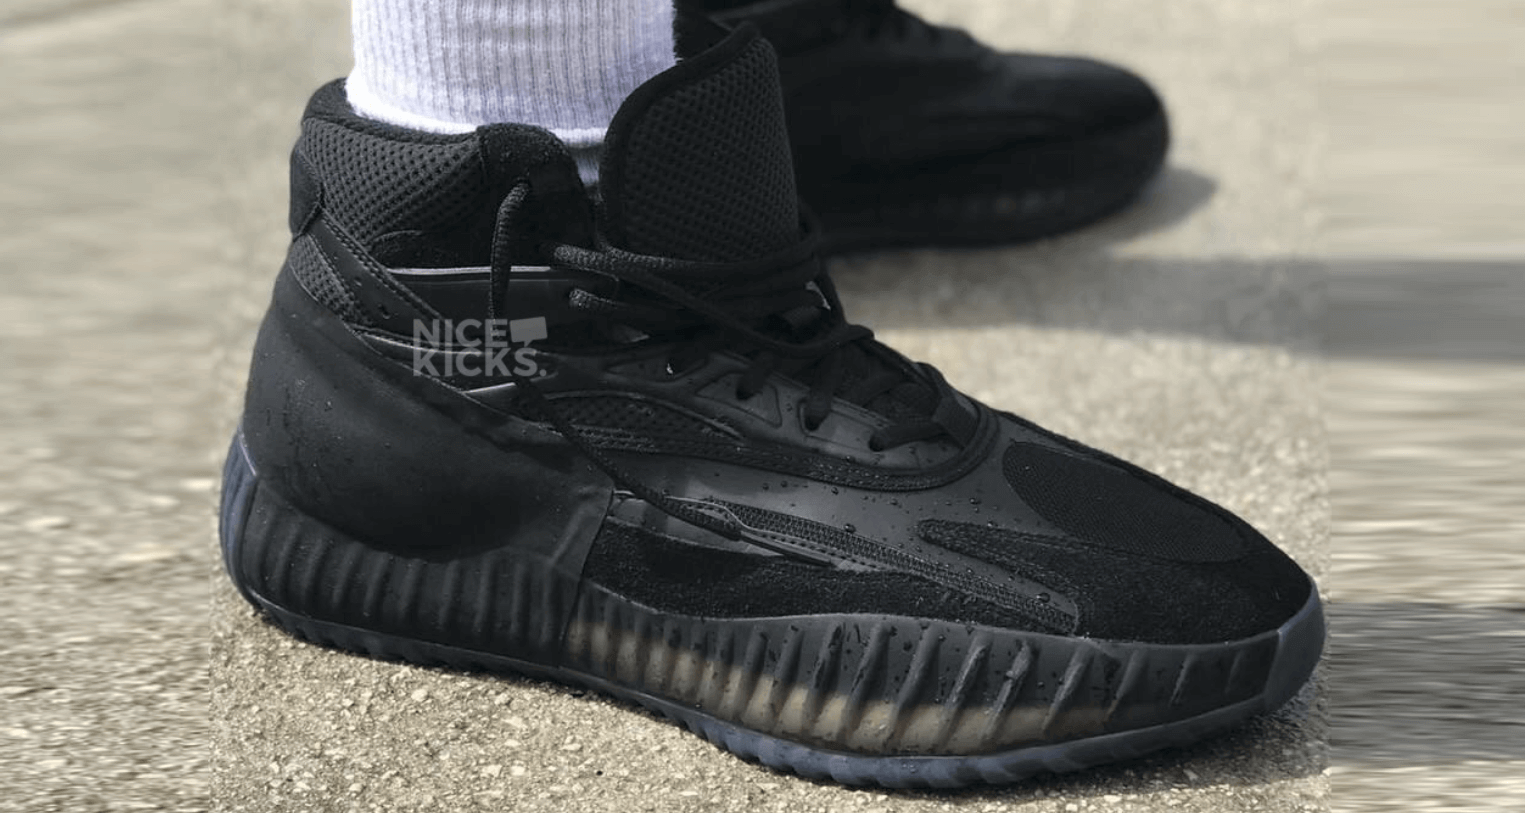 yeezy basketball shoes 2019